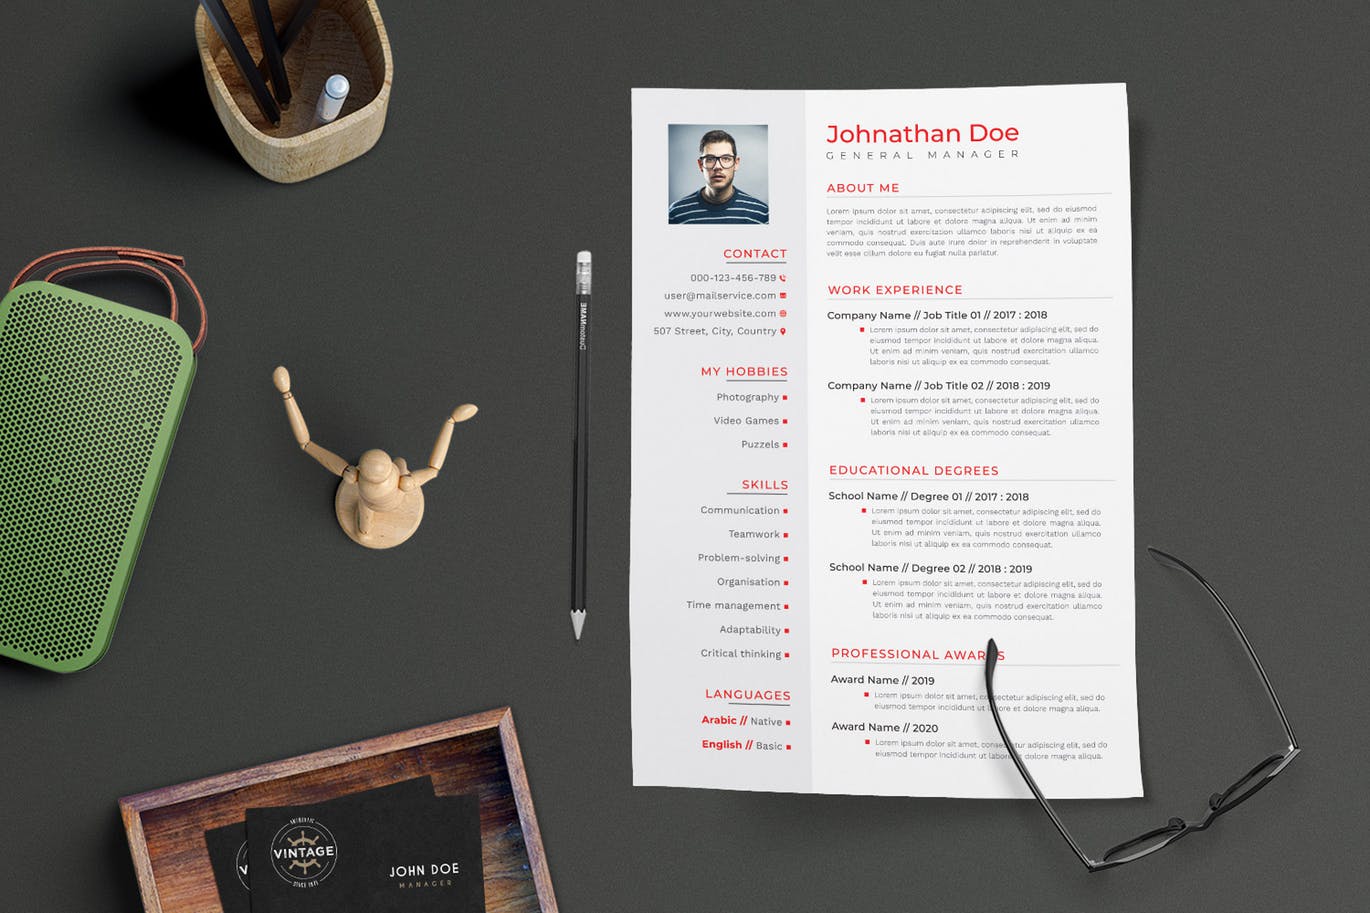 项目管理经理个人电子蚂蚁素材精选简历模板 CV Resume插图(2)